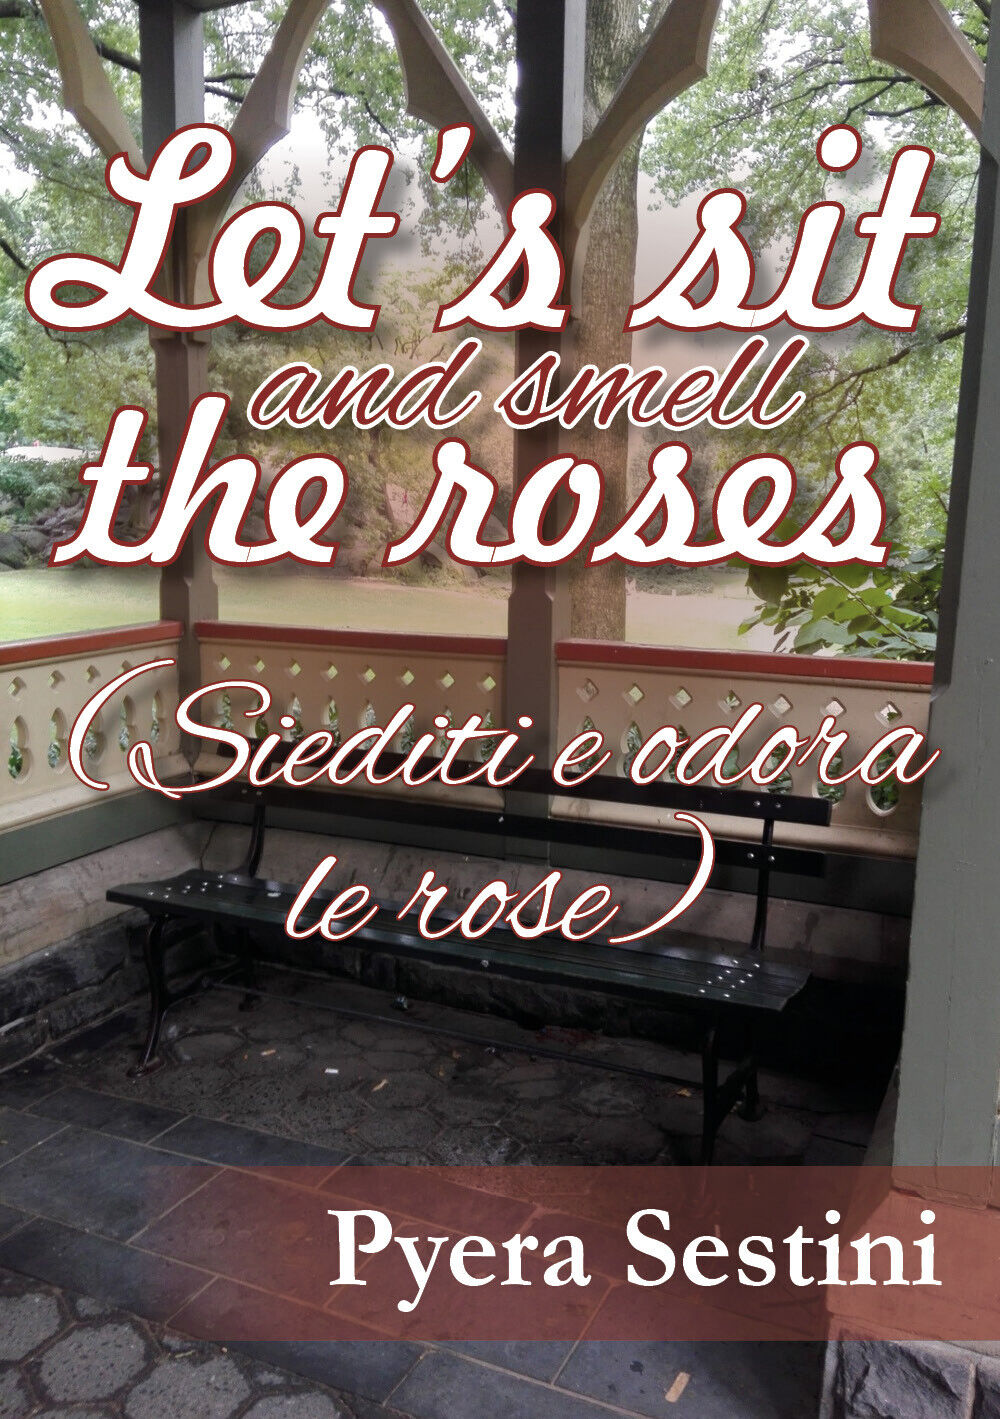 Let?s sit and smell the roses (siediti e odora le rose) - Pyera Sestini,  2018-P